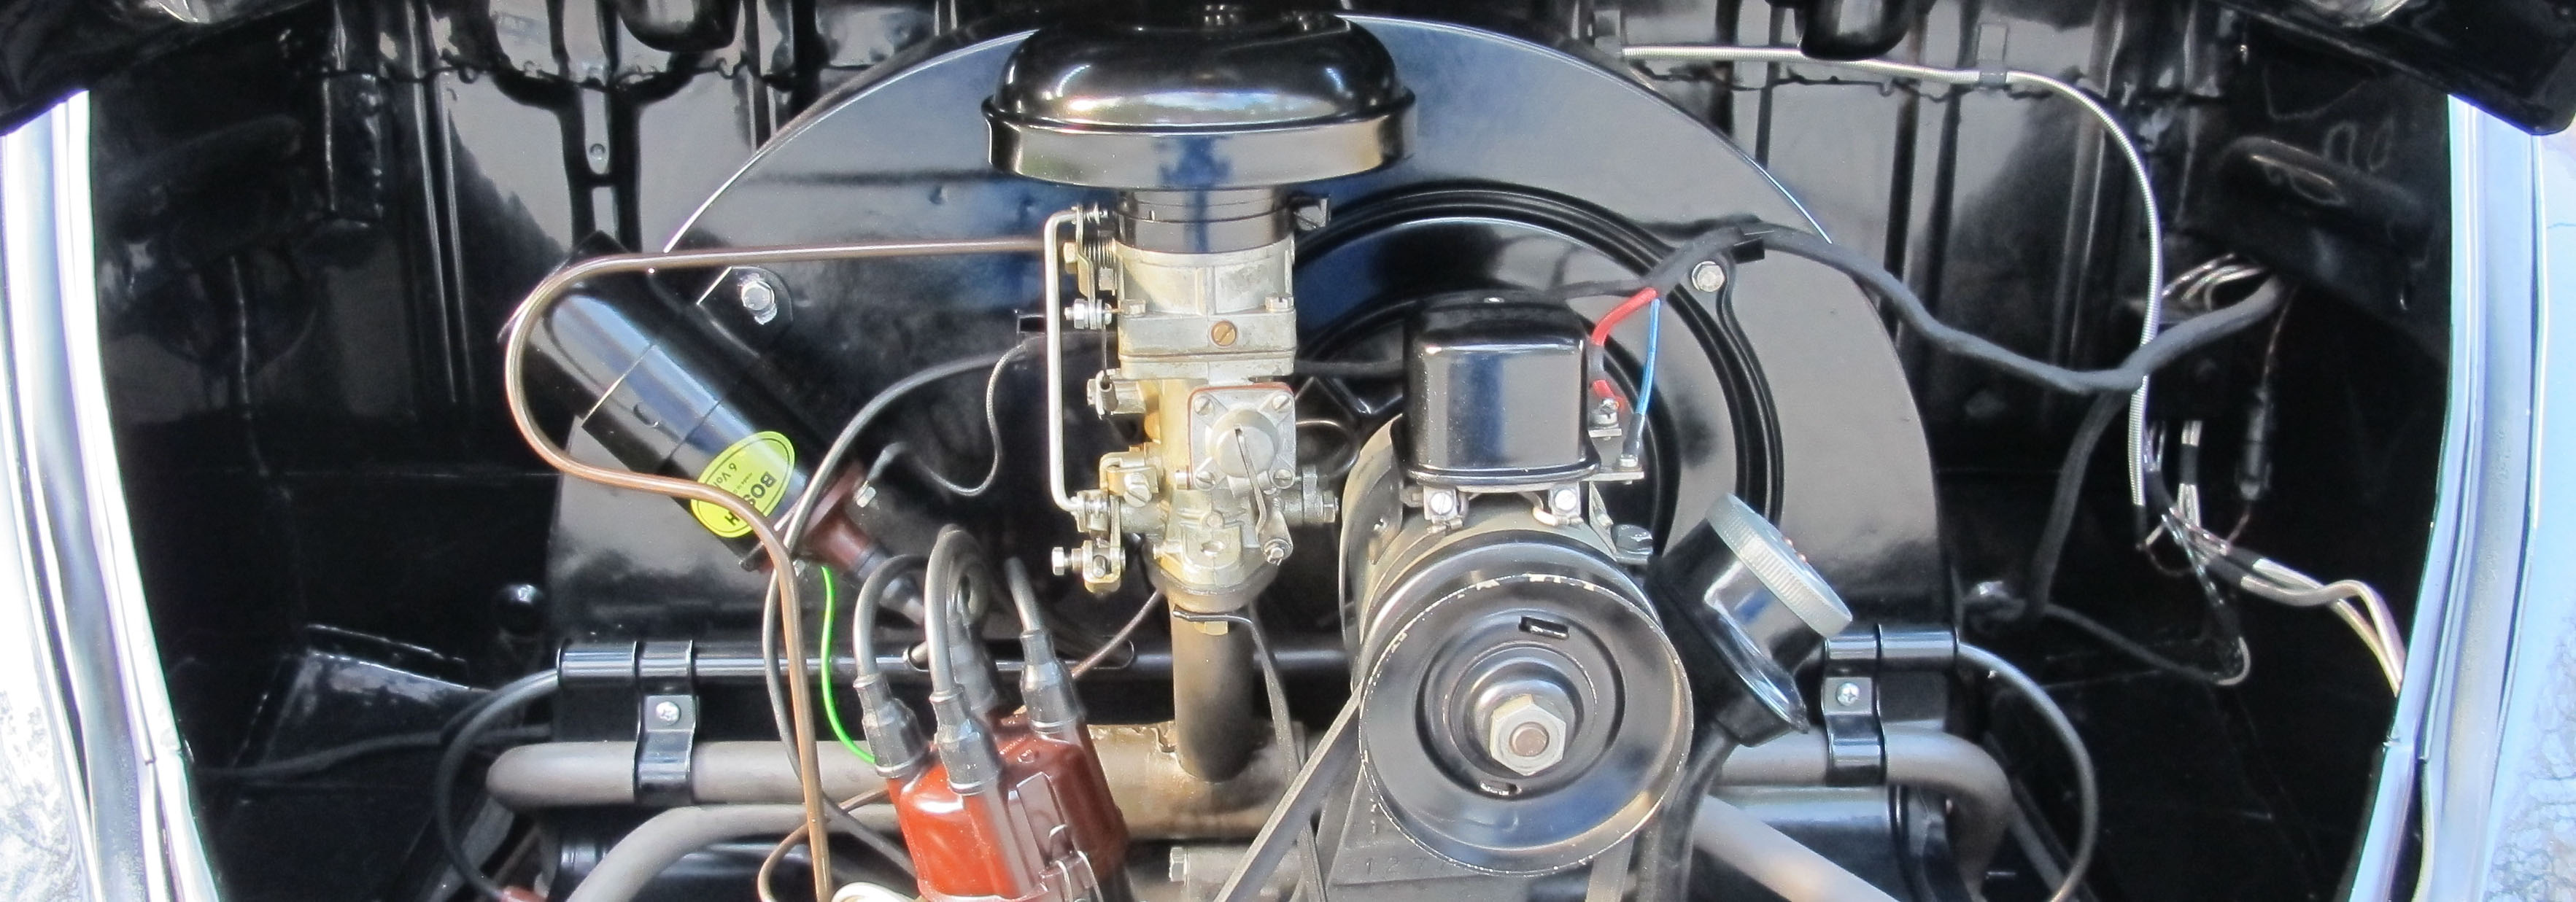 Der verbaute 30 PS Motor des VW Käfers ist komplett aus Neuteilen aufgebaut. 